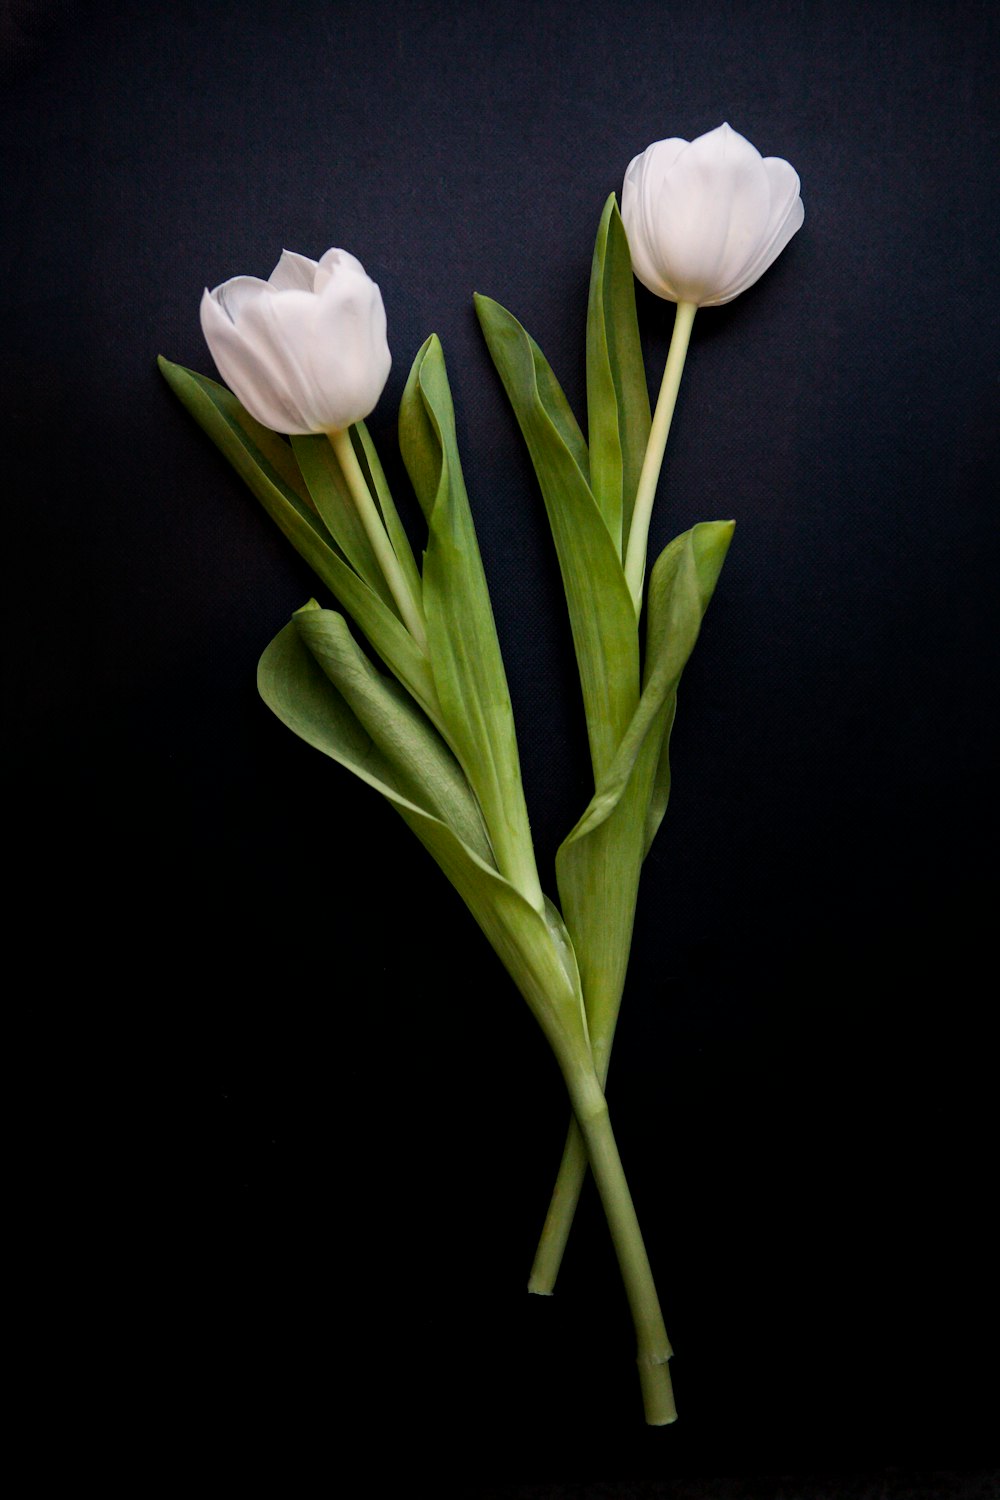 999+ Imágenes de tulipanes blancos | Descargar imágenes gratis en Unsplash